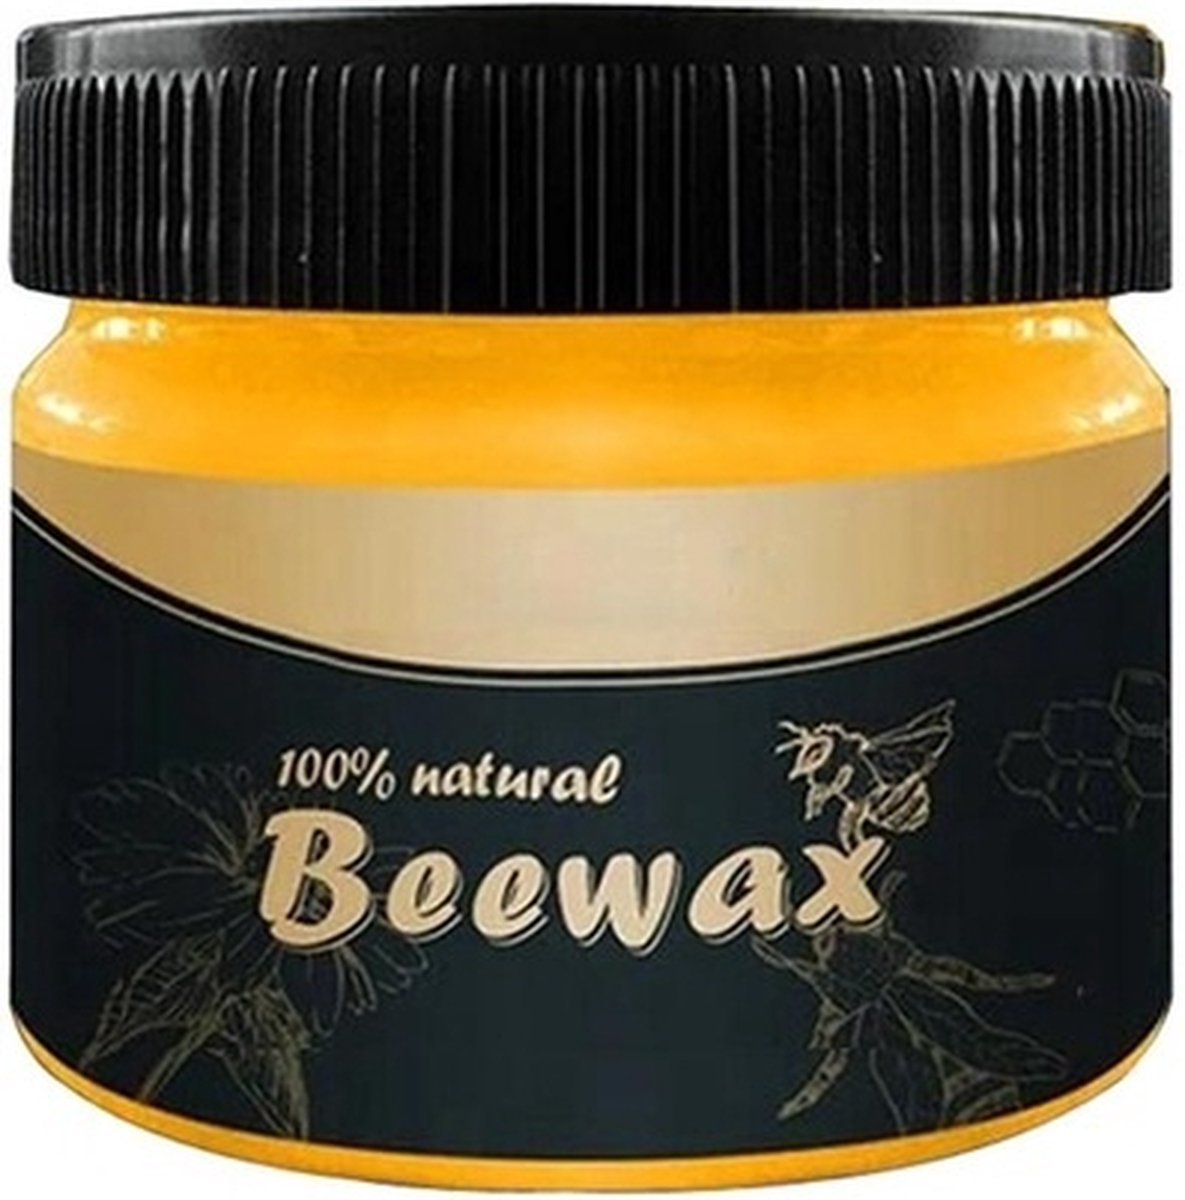 Bijenwas - Bijenwas meubel - 100% Natuurlijke bijenwas - Meubelonderhoudsmiddel - 80 gram - - Merkloos